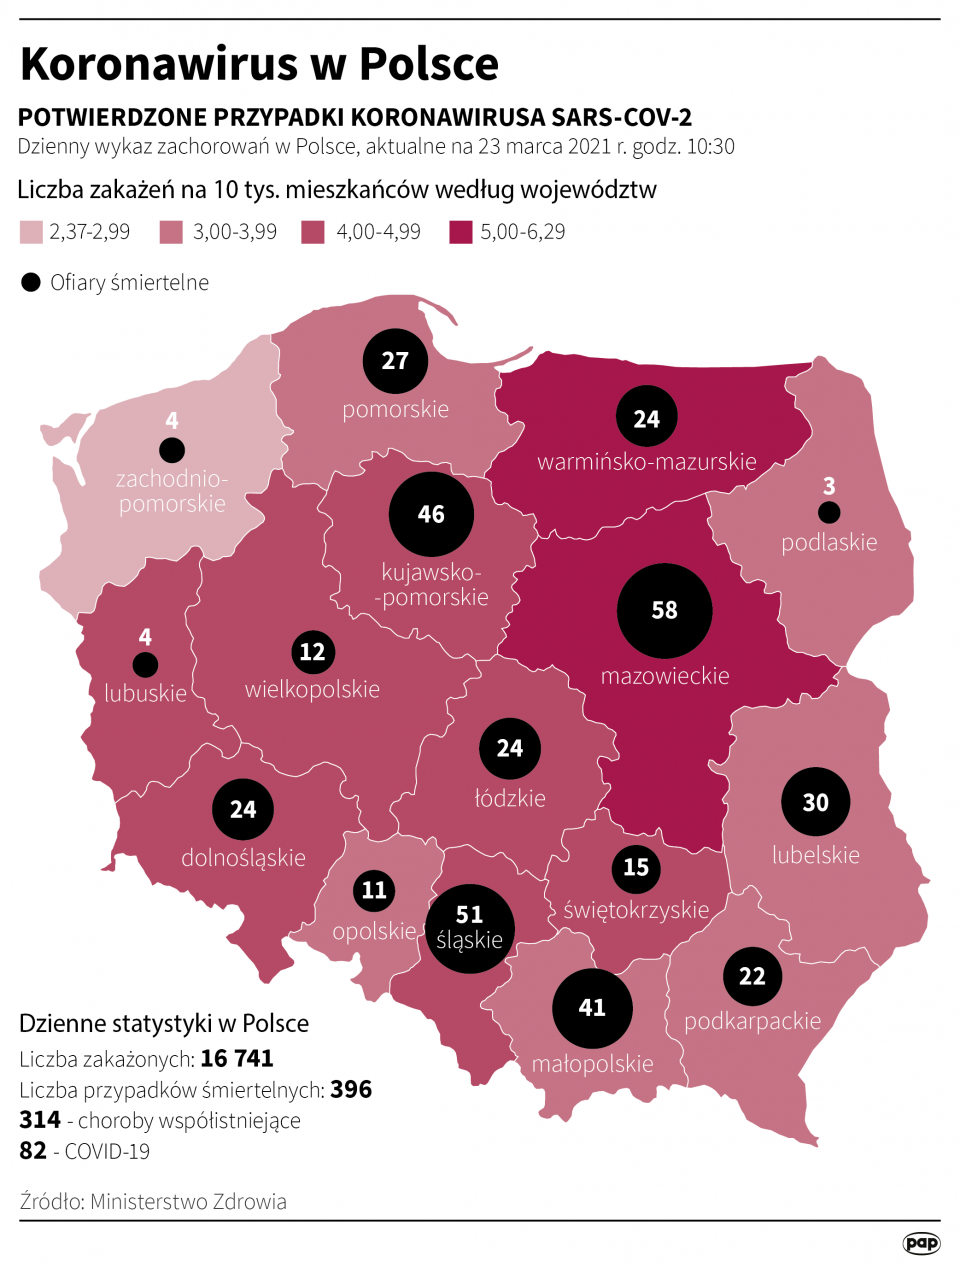 Koronawirus w Polsce stan na 23 marca [autor: Maciej Zieliński, źródło: PAP]